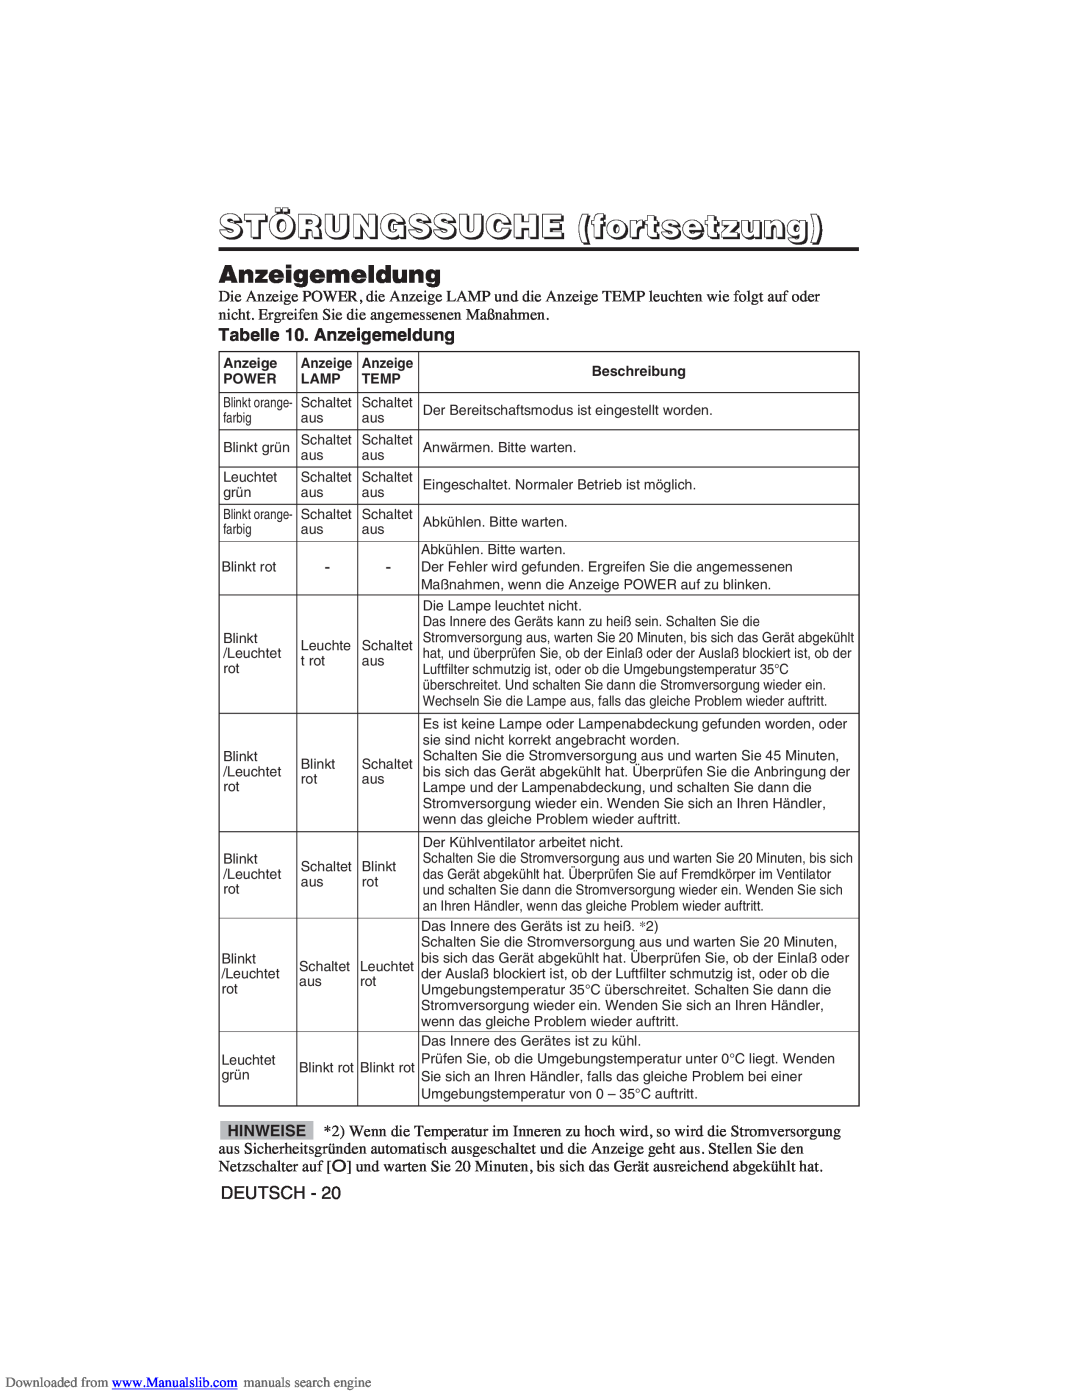 Hitachi CP-X275W user manual STÖRUNGSSUCHE fortsetzung, Tabelle 10. Anzeigemeldung 